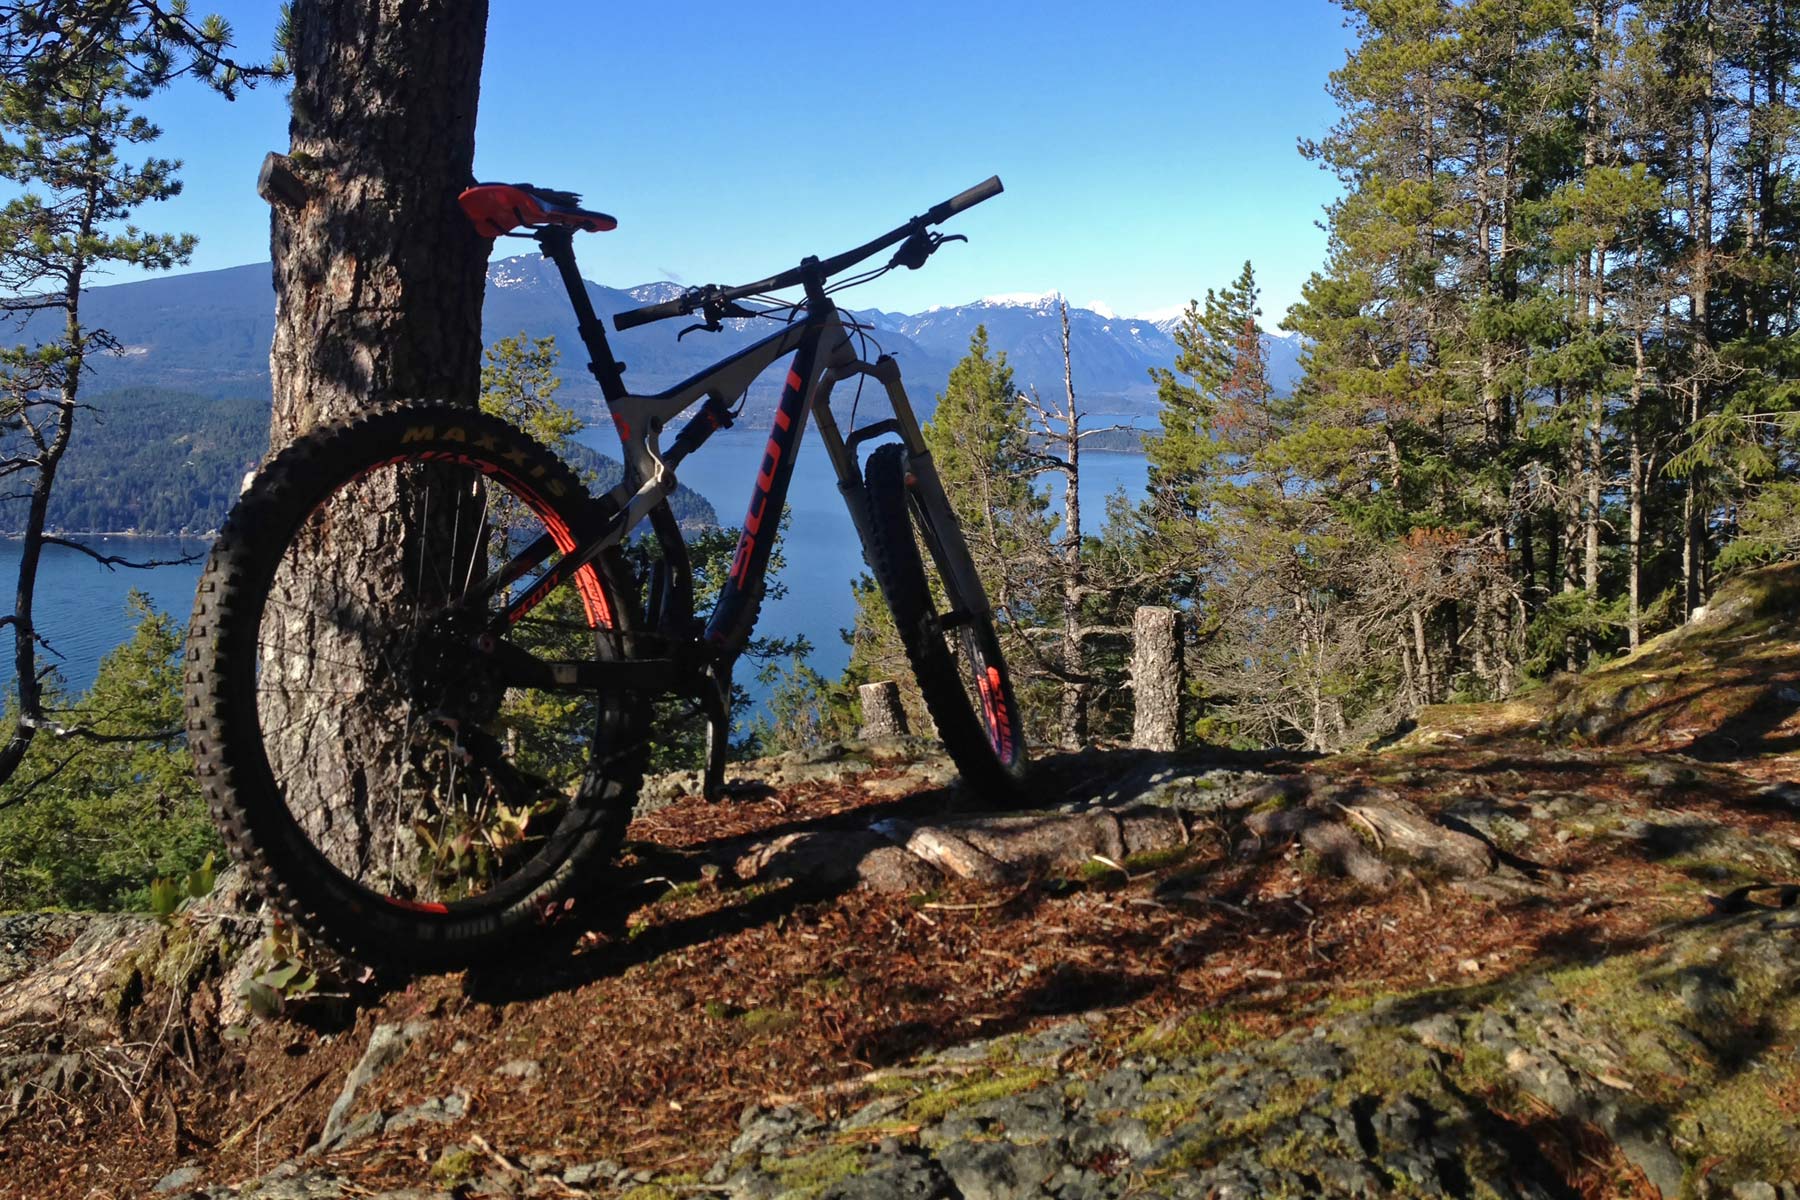 Bikerumor Pic Of The Day: British Columbia trails overlooking Horseshoe Bay